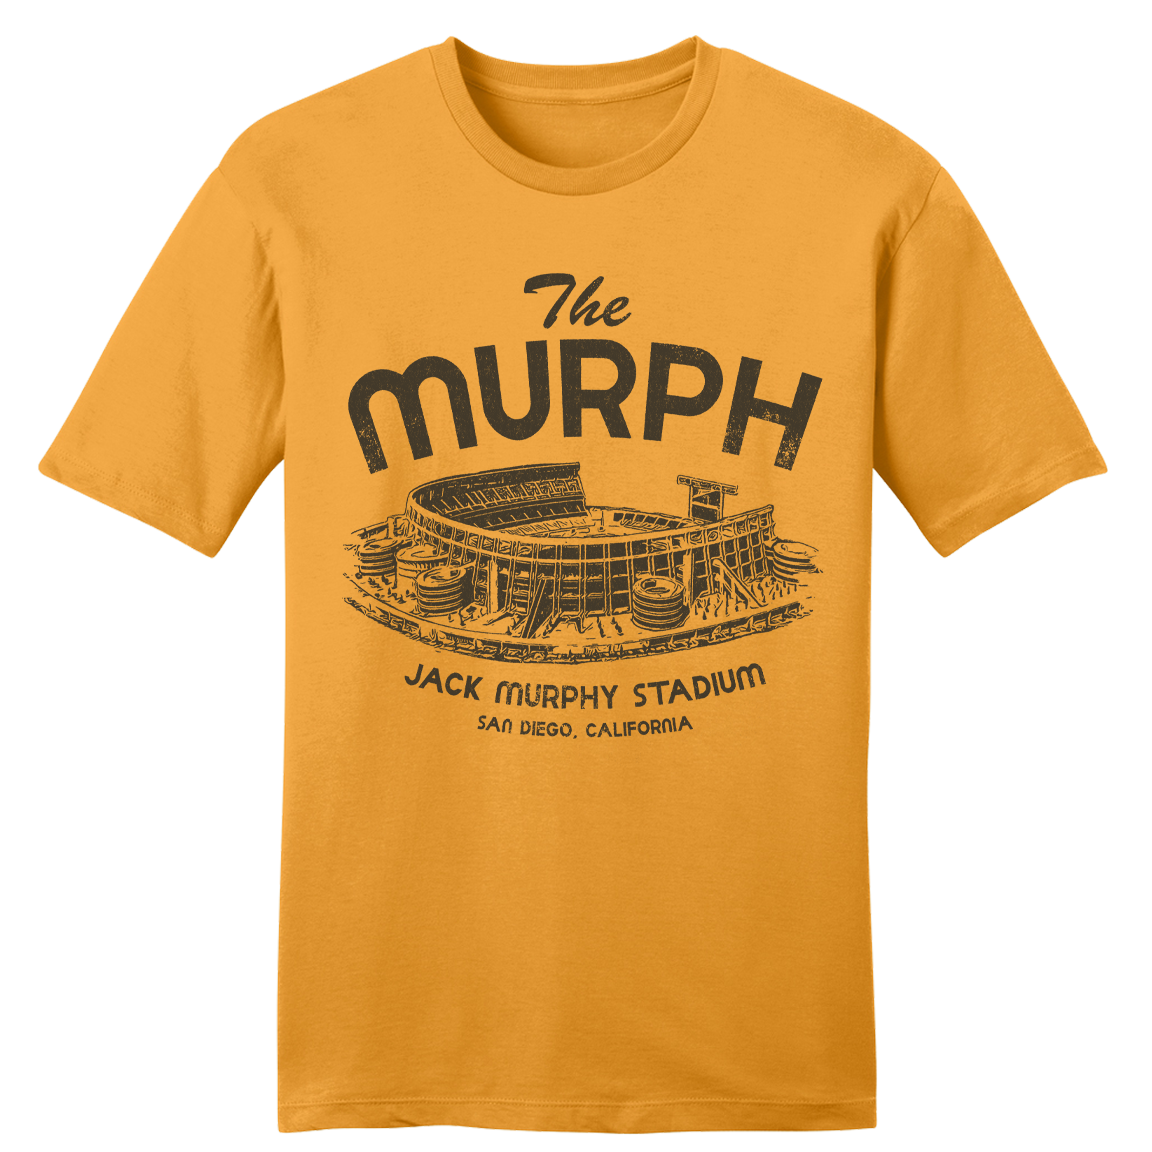 Jack Murphy Stadium "The Murph" Tee